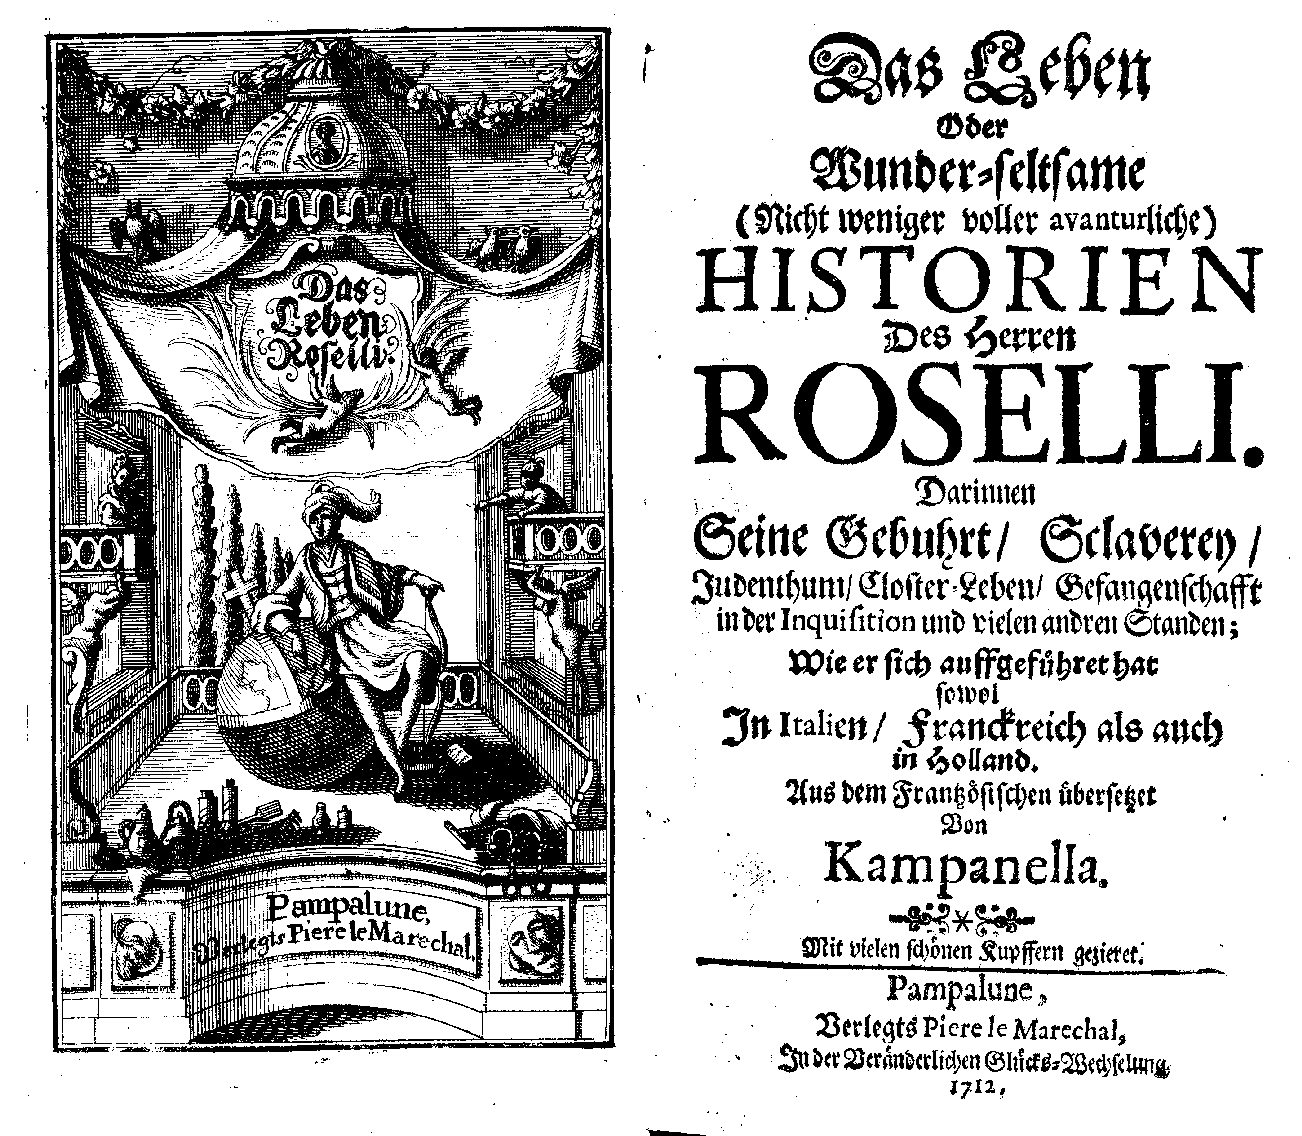 Roselli (Pampallune: Piere le Marechal, 1712).